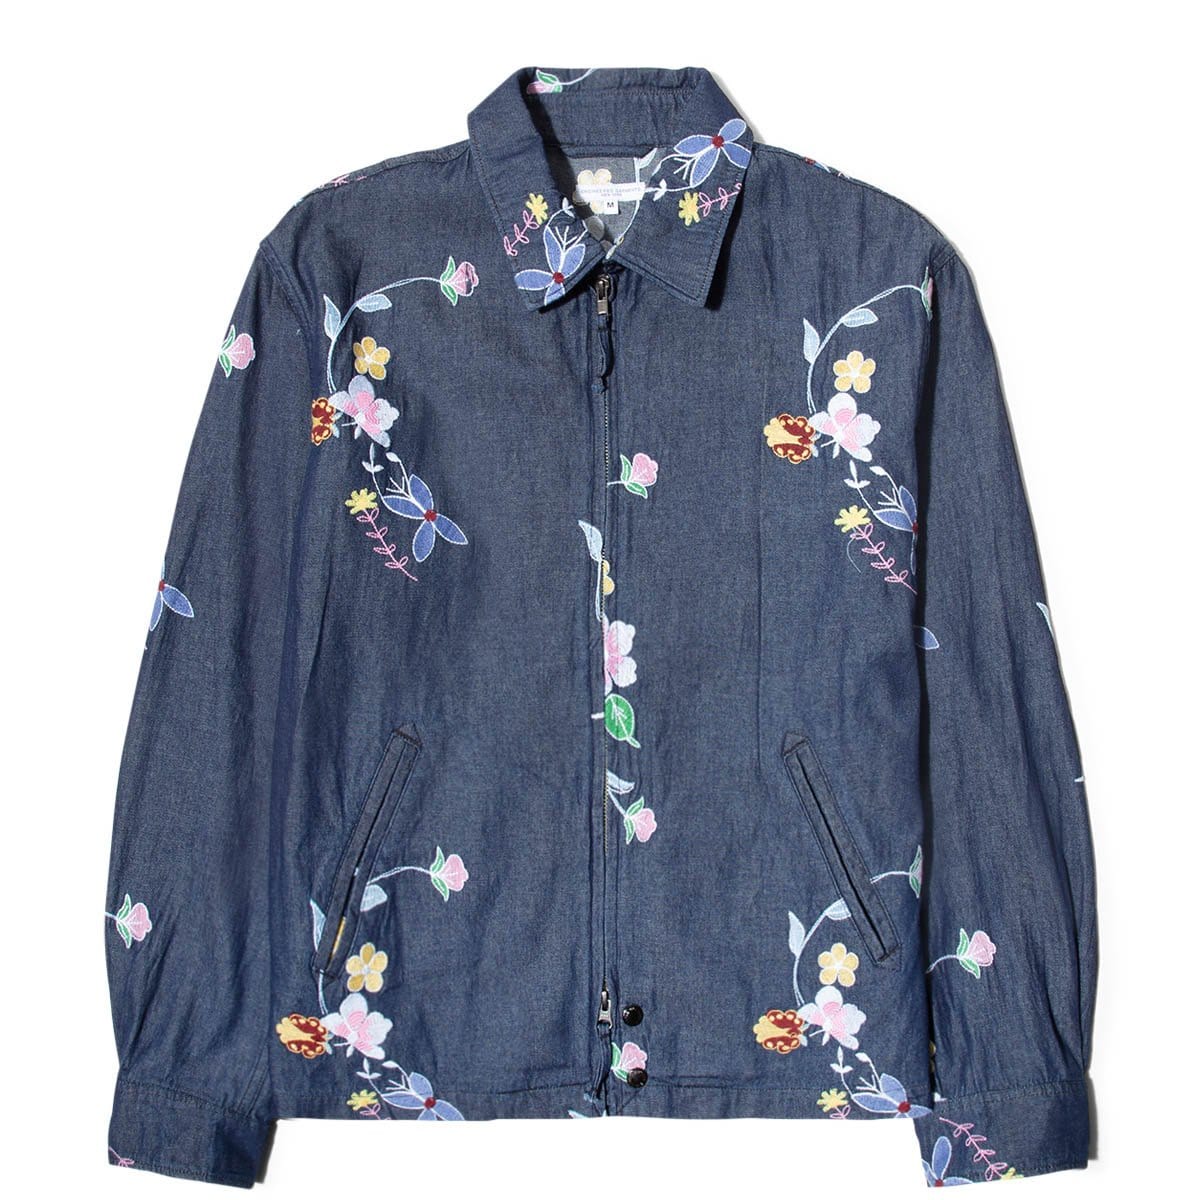 Claigton Jacket Indigo Denim Floral Embroidery